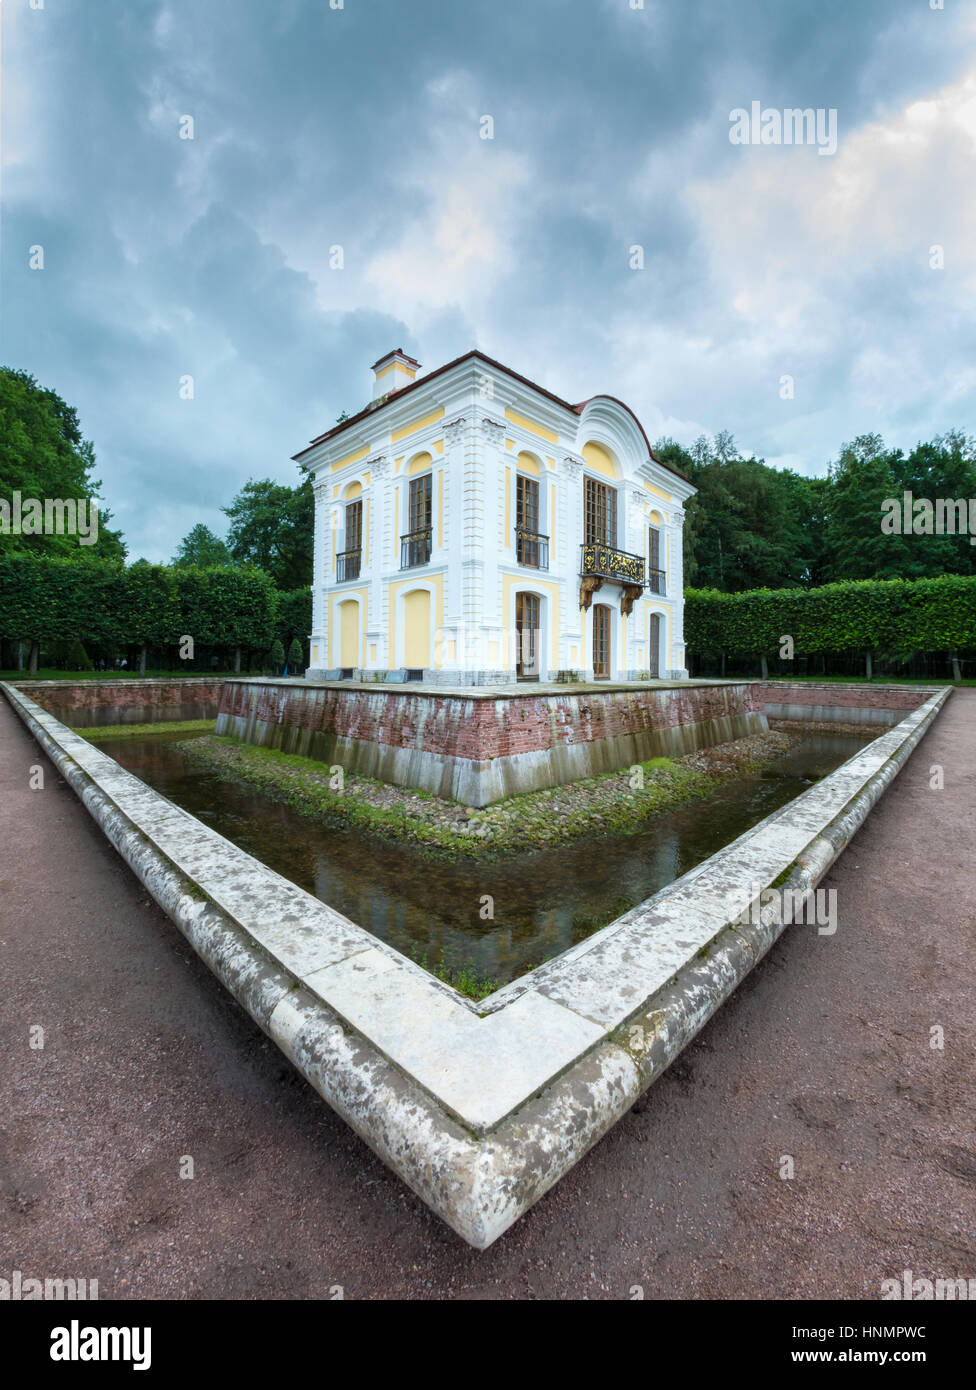 PETERHOF, Russland - 13. Juli 2016: Pavillon 'Hermitage' in Peterhof, fisheye erschossen, St. Petersburg, Russland Stockfoto